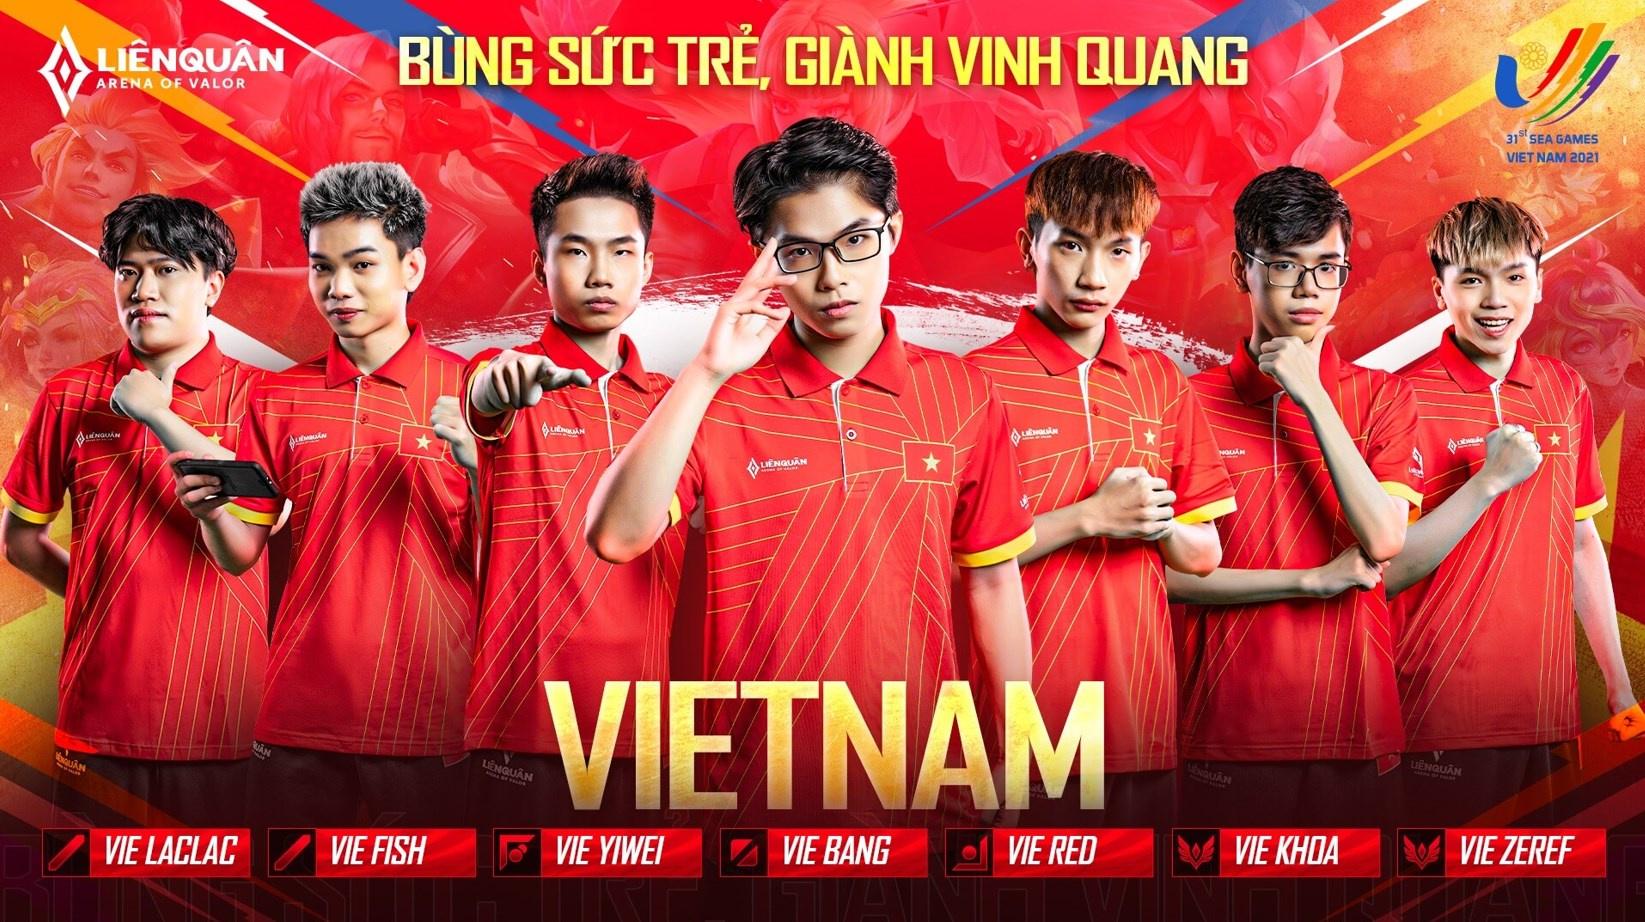 Đội tuyển Liên Quân Mobile Việt Nam: Các tuyển thủ Liên Quân Mobile Việt Nam đang làm rất tốt tại những giải đấu quốc tế. Hãy cùng đến với chúng tôi để ủng hộ đội tuyển của chúng ta và cập nhật tin tức mới nhất về các trận đấu.